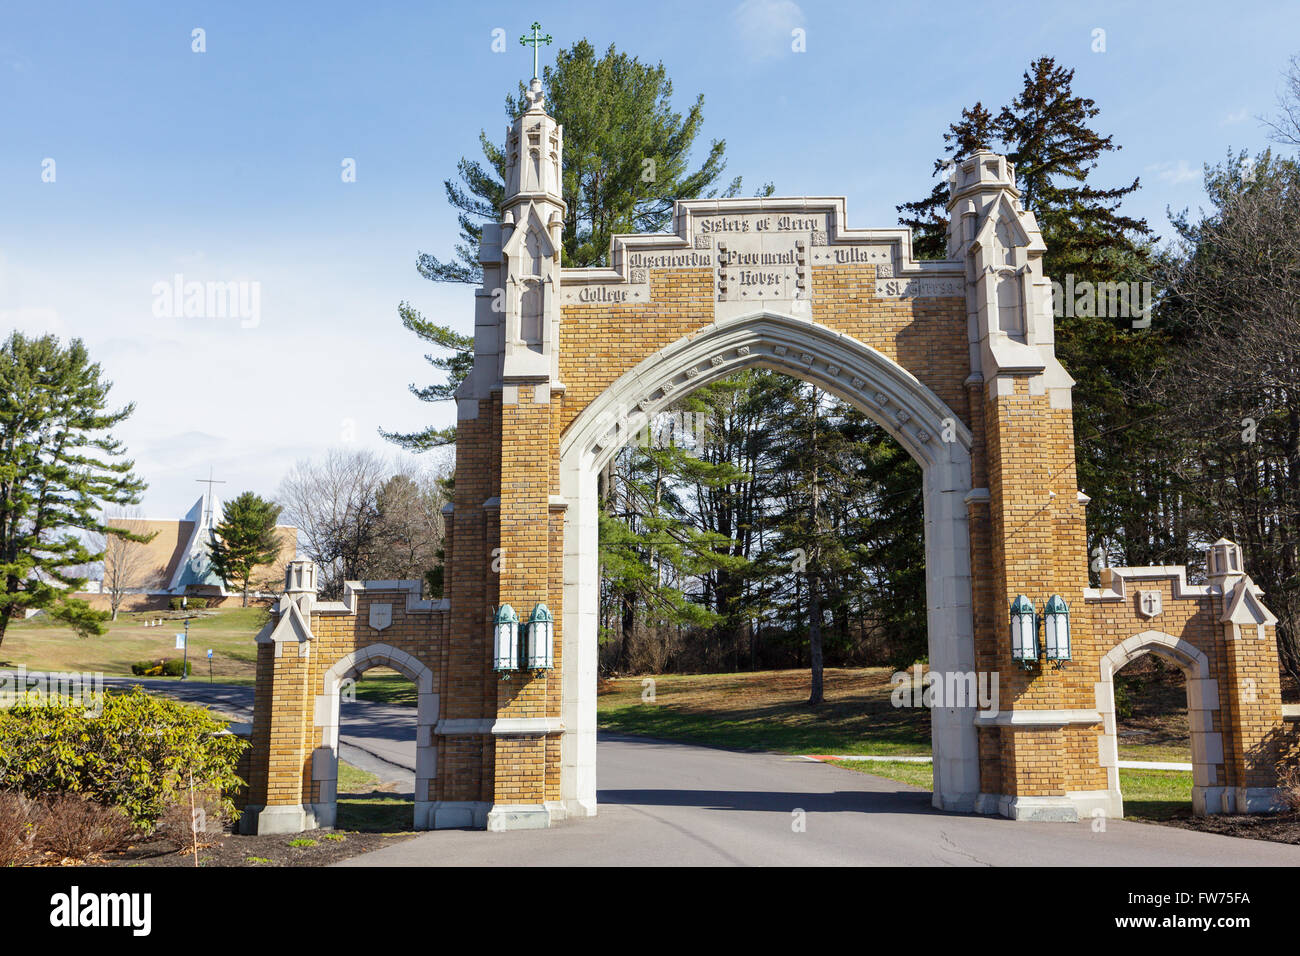 Porte d'entrée, Misericordia University, Dallas, Texas, USA, Luzerne Comté. Banque D'Images